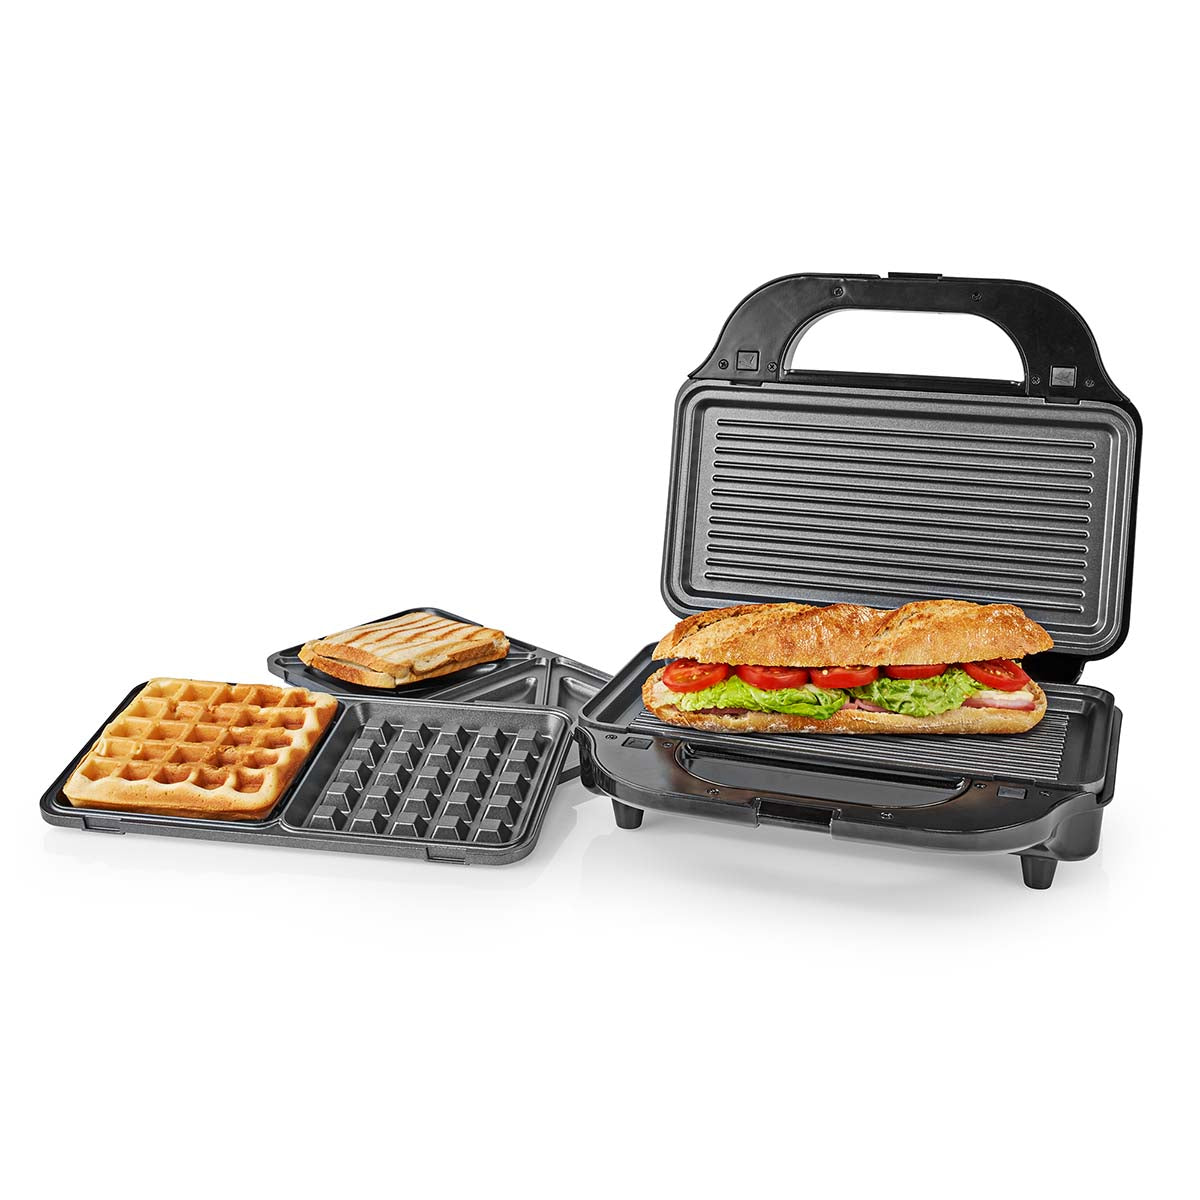 Multi-Grill | Grill / Sandwich / Waffle | 900 W | 28 x 15 cm | Automatischer Temperaturkontrolle | Edelstahl / Kunststoff